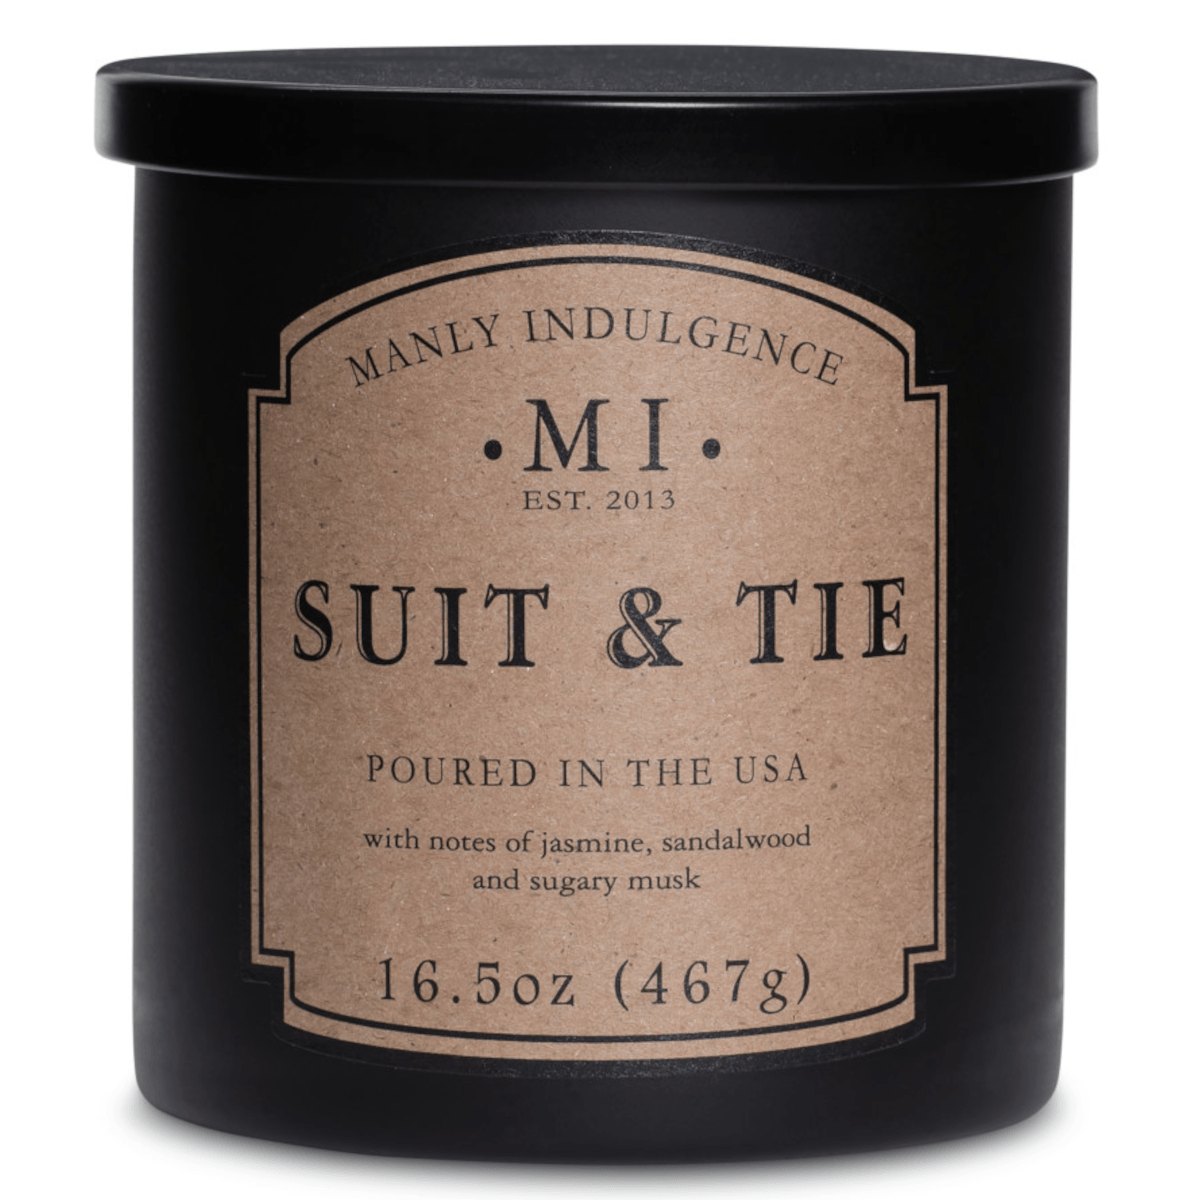 Colonial Candle - Manly Indulgence Classic - Suit & Tie - met noten van jasmijn, sandalwood en musk - mannelijke geurkaas - Viv! Home Luxuries